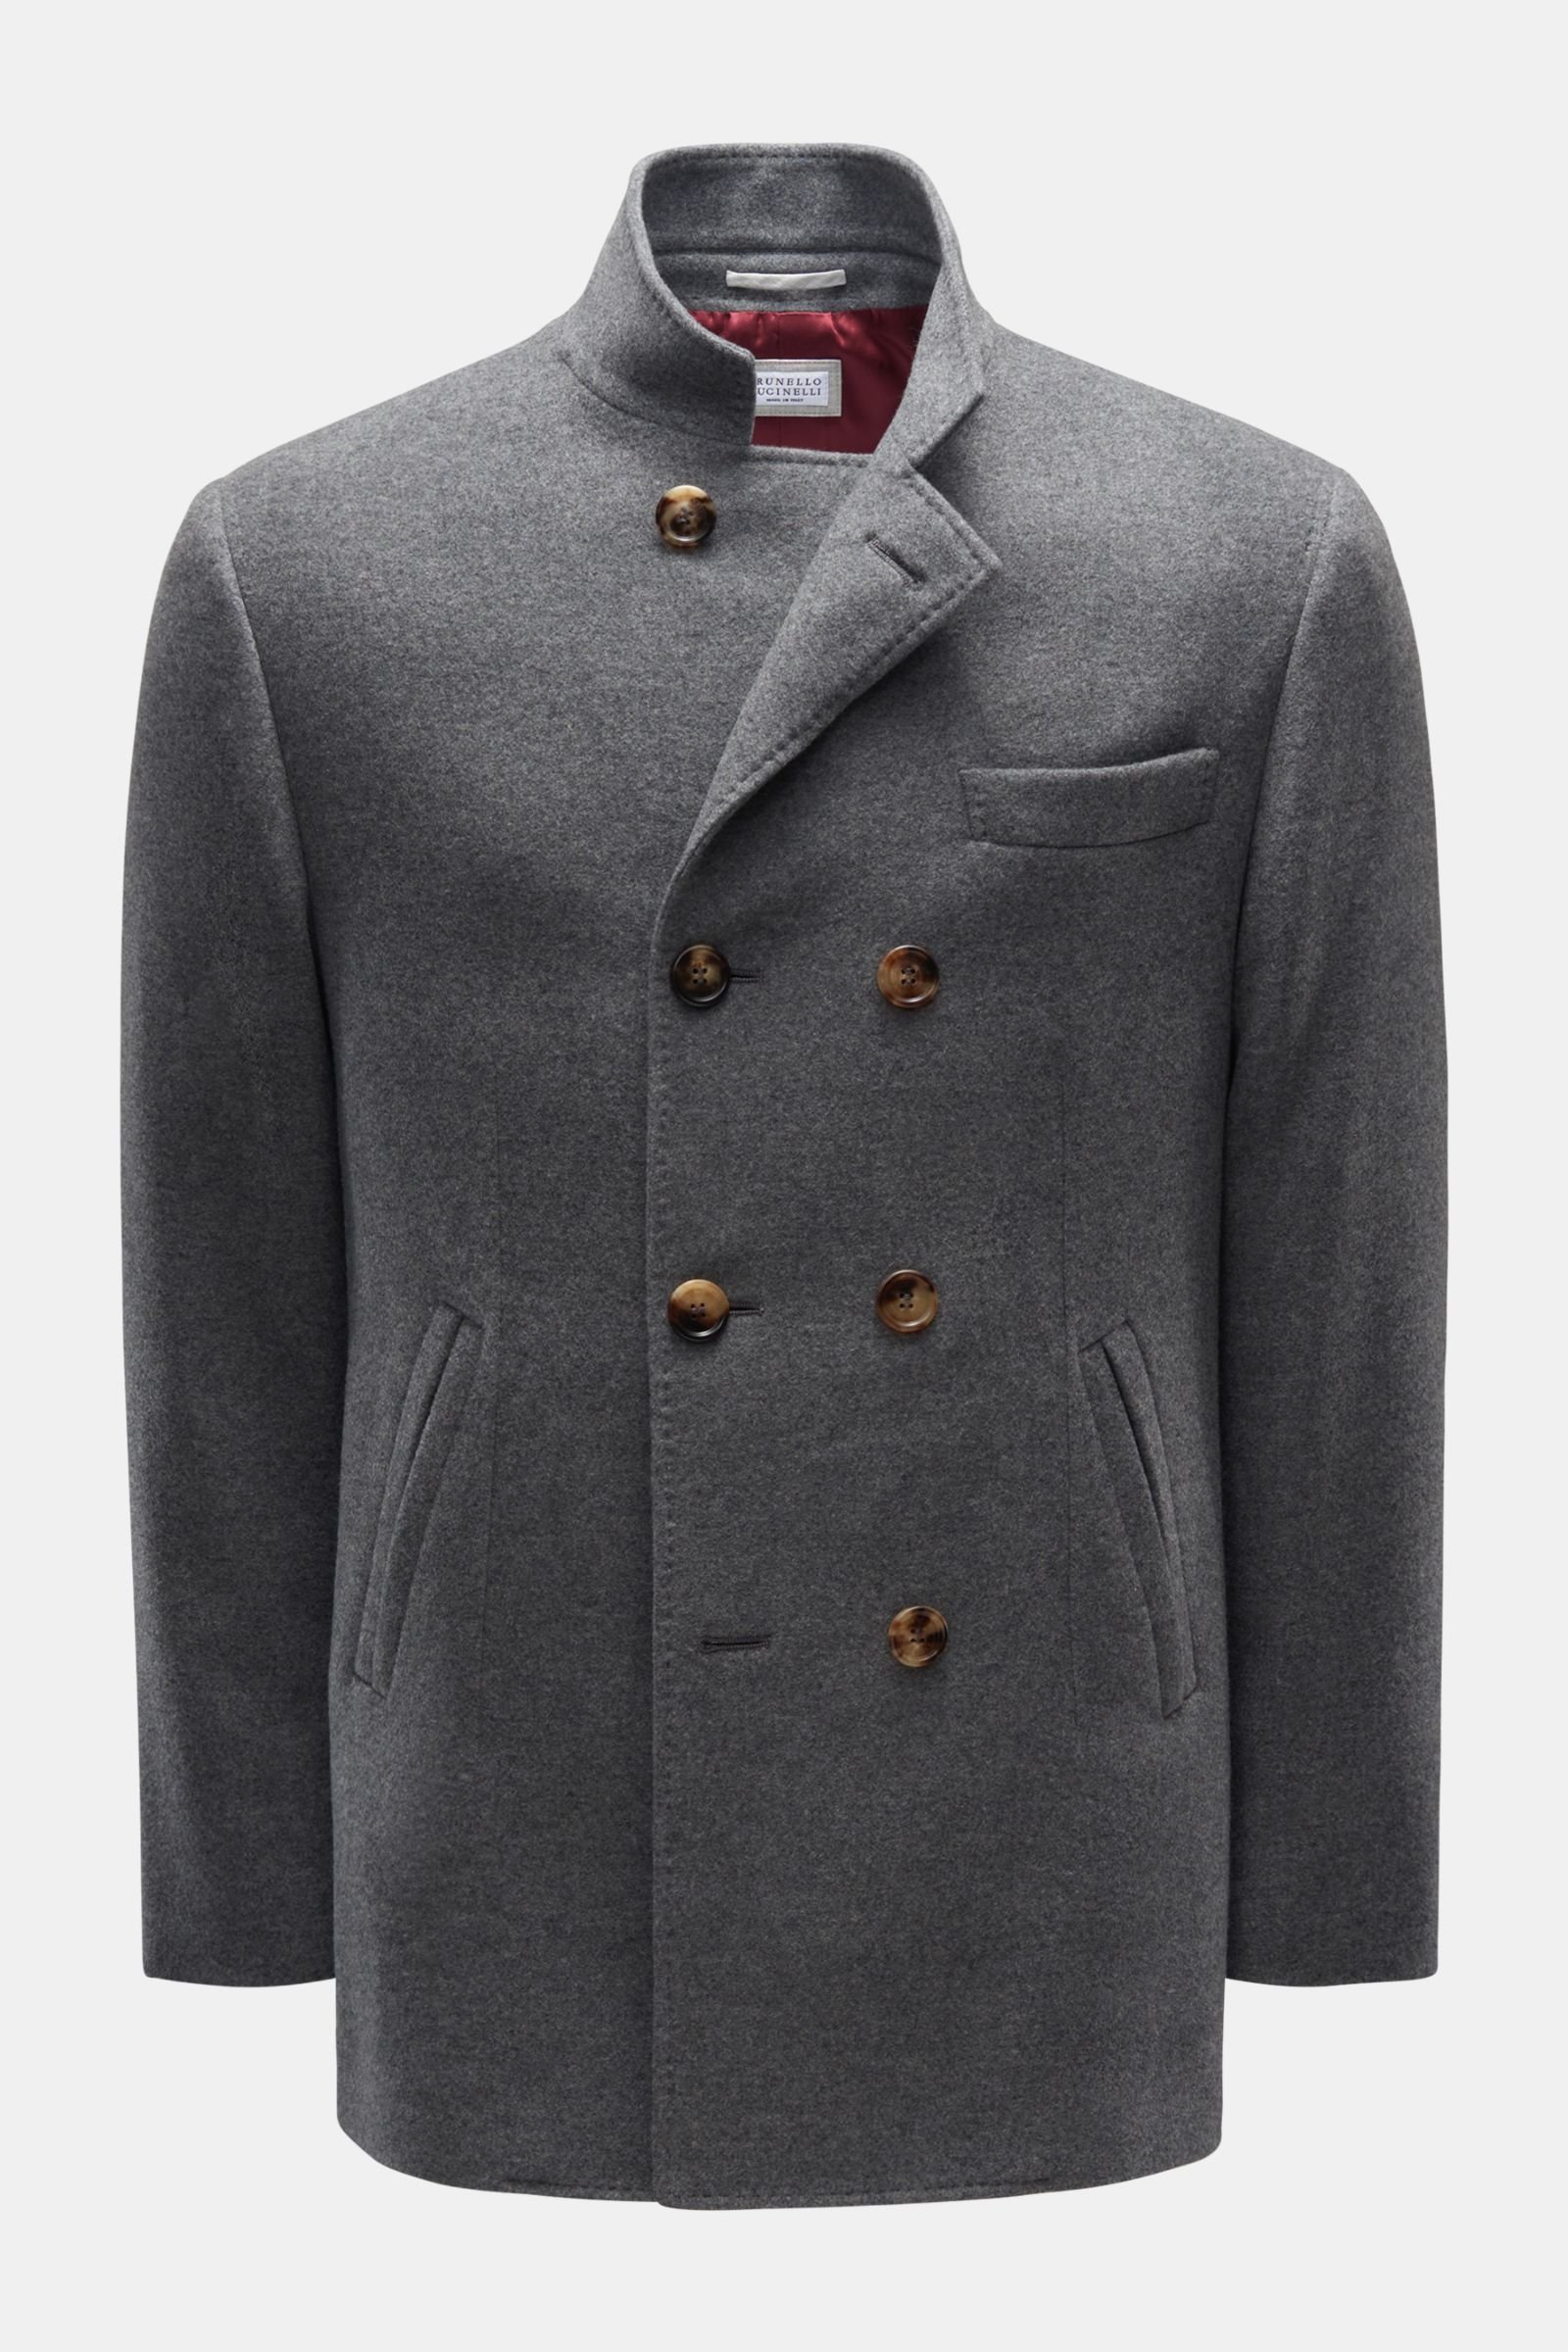 Cashmere jacket grey